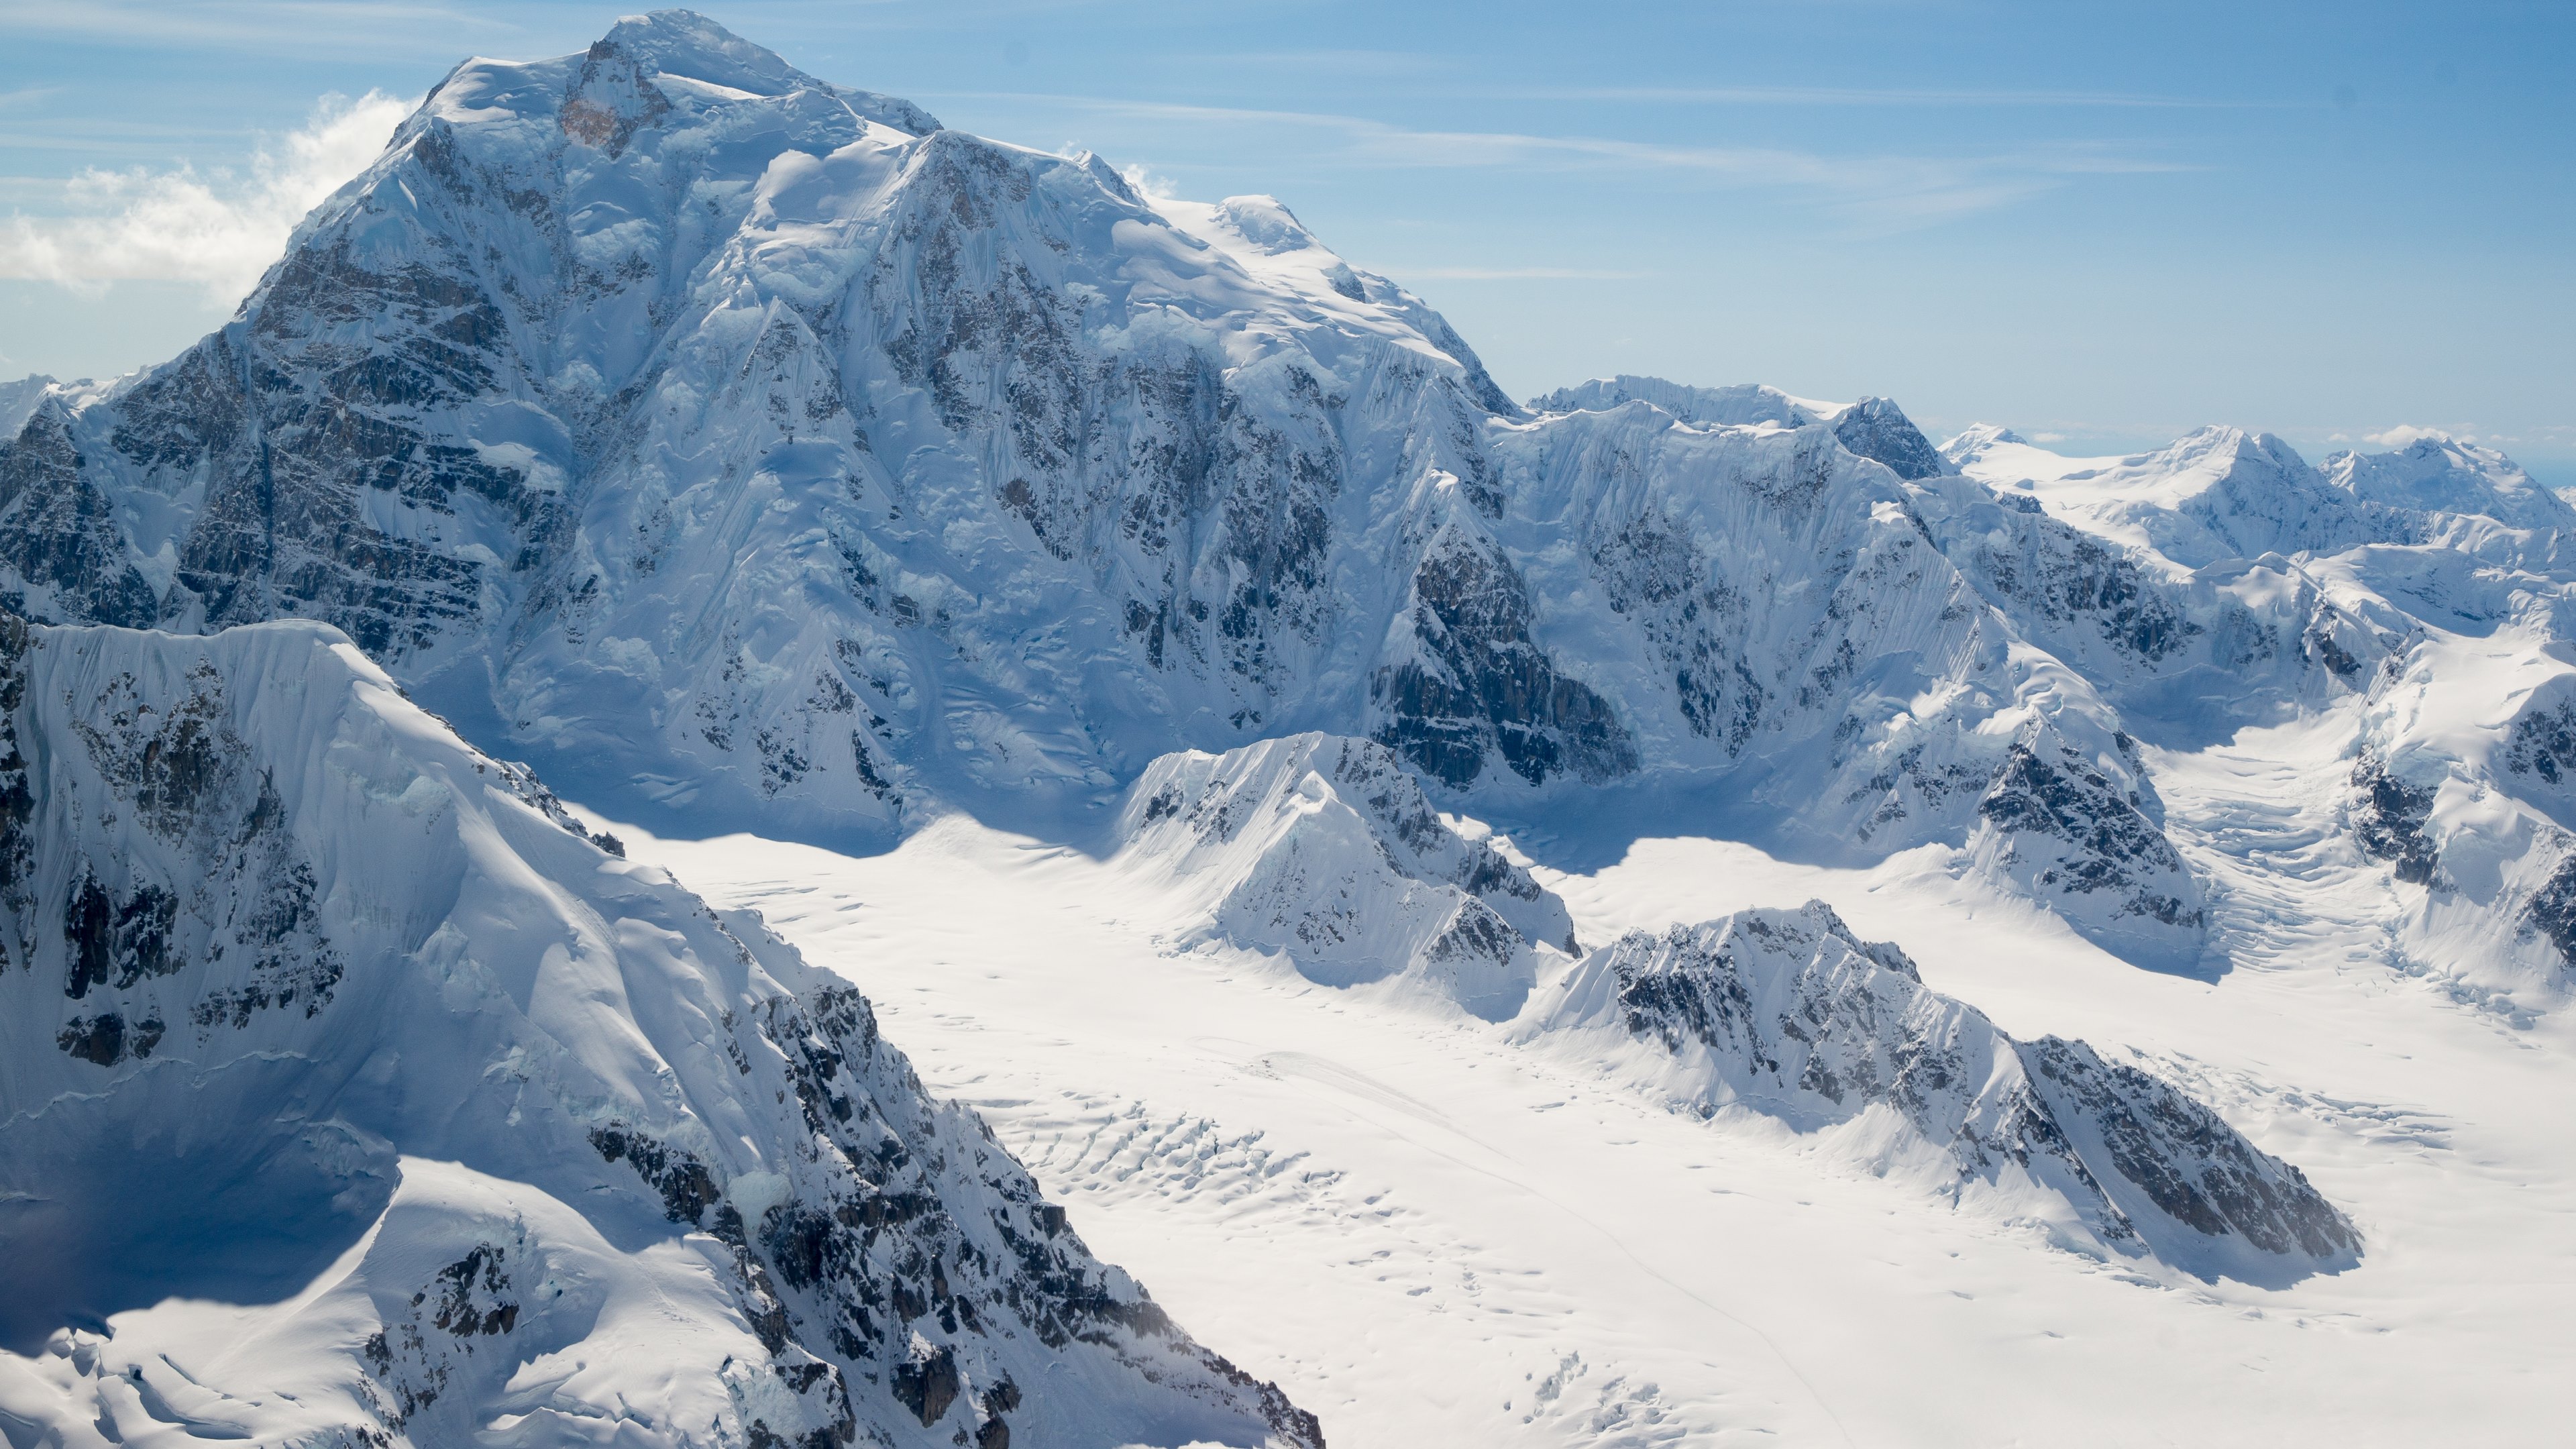 Free download Alaska Landscape Snow Mountain Peaks HD Wallpapers